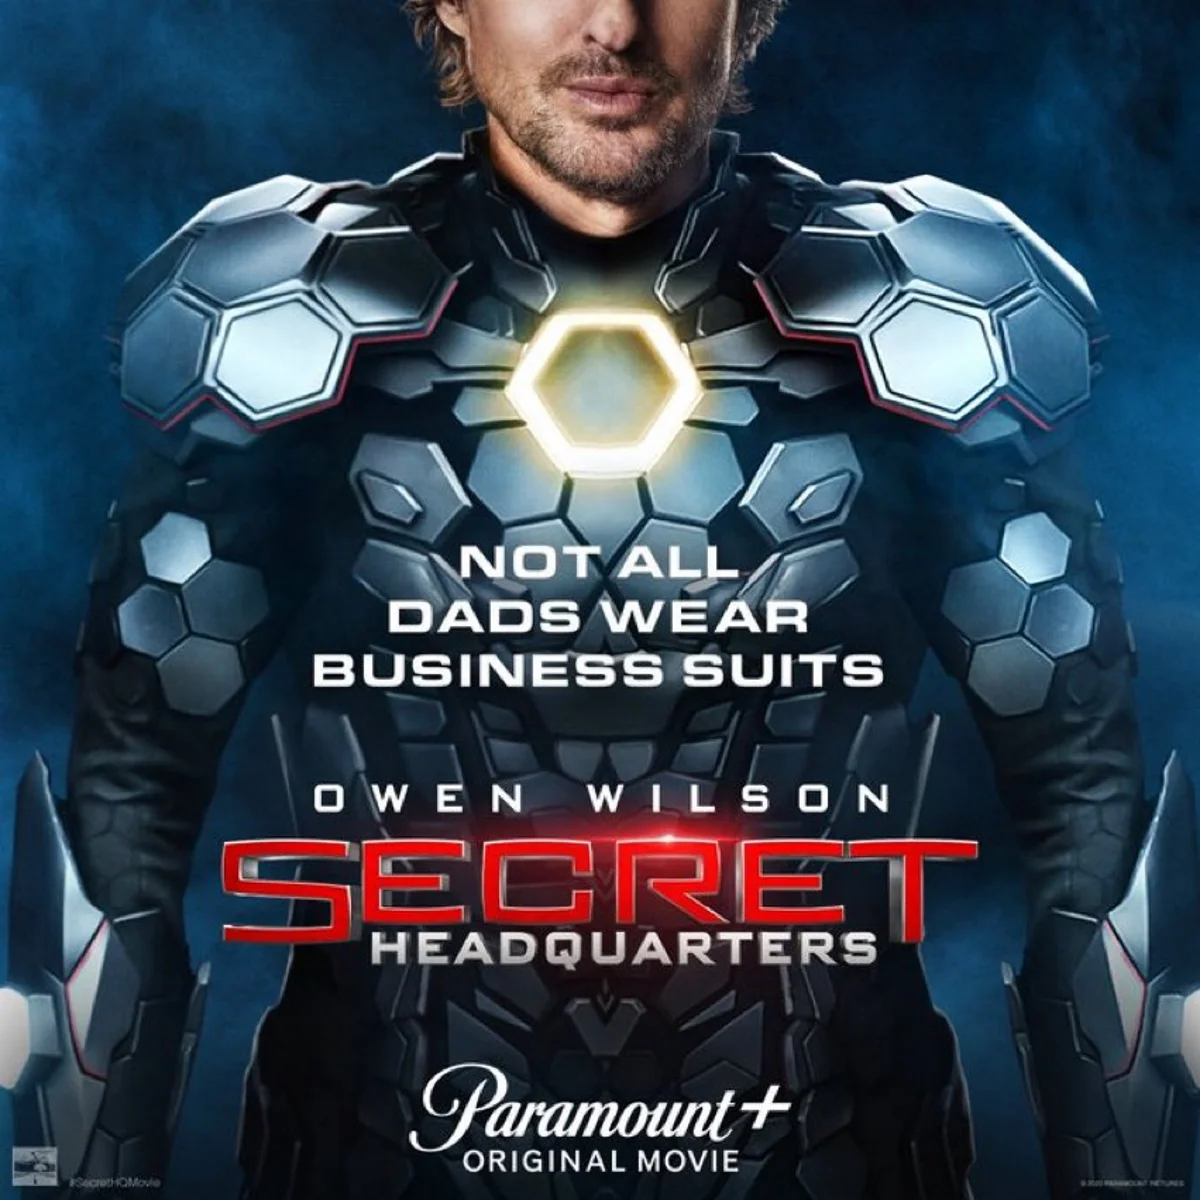 Оуэн Уилсон примерил супергеройский костюм на постере фильма «Секретная штаб-квартира» - фото 1